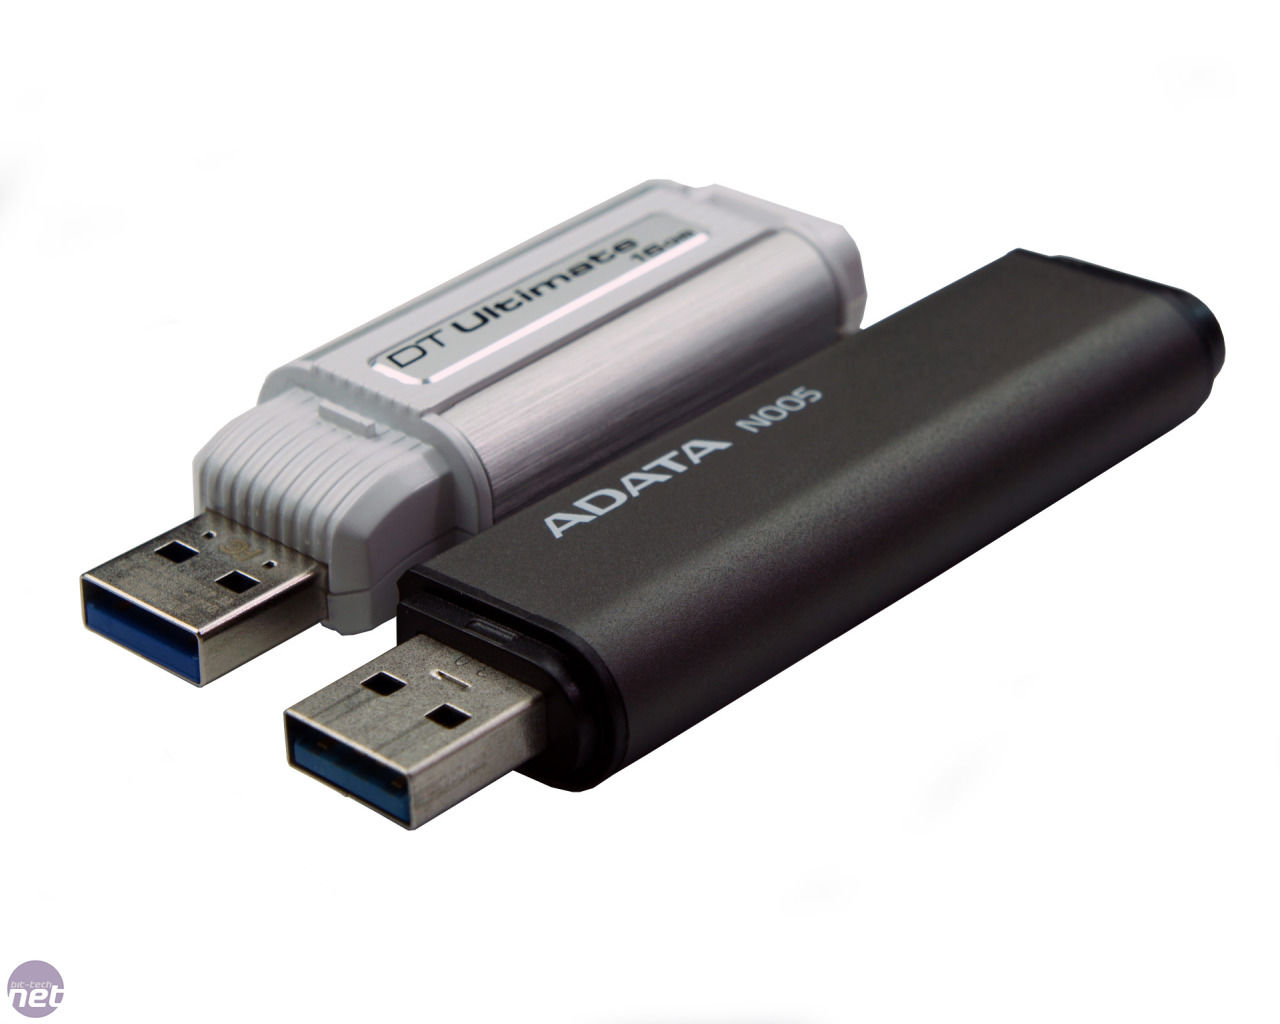 Флешка 1024. Флеш-накопитель Elough USB 3,0. USB-флеш-накопитель 1024 ГБ. Флешка data 3.0. Флешка АДАТА.